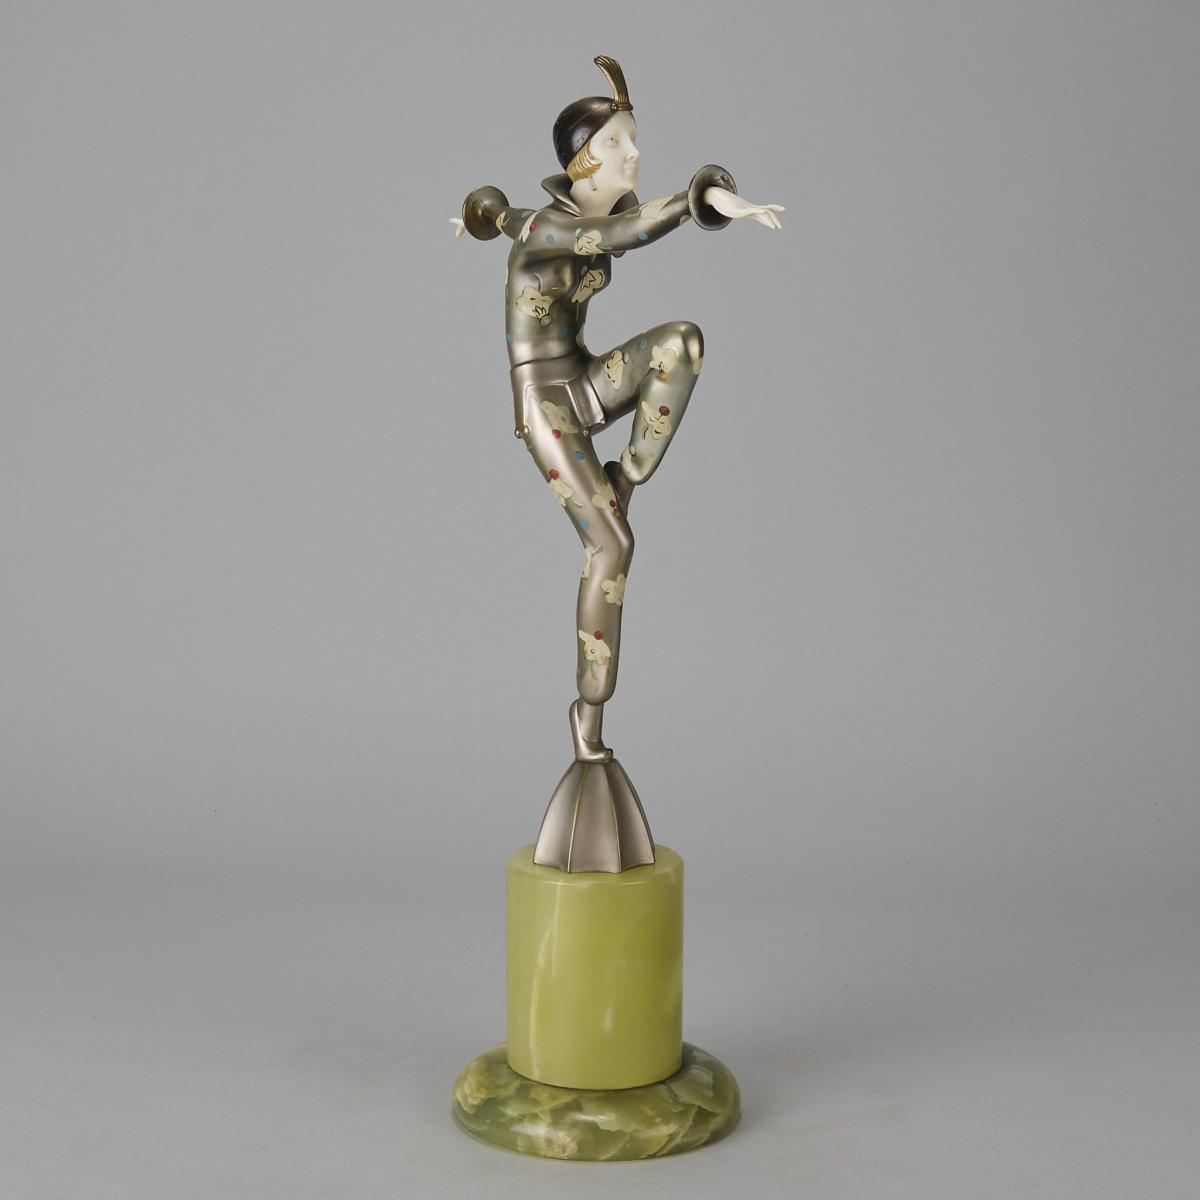 Early 20th Century Art Deco Bronze Sculpture entitled “Con Brio” by Josef Lorenzl & Crejo